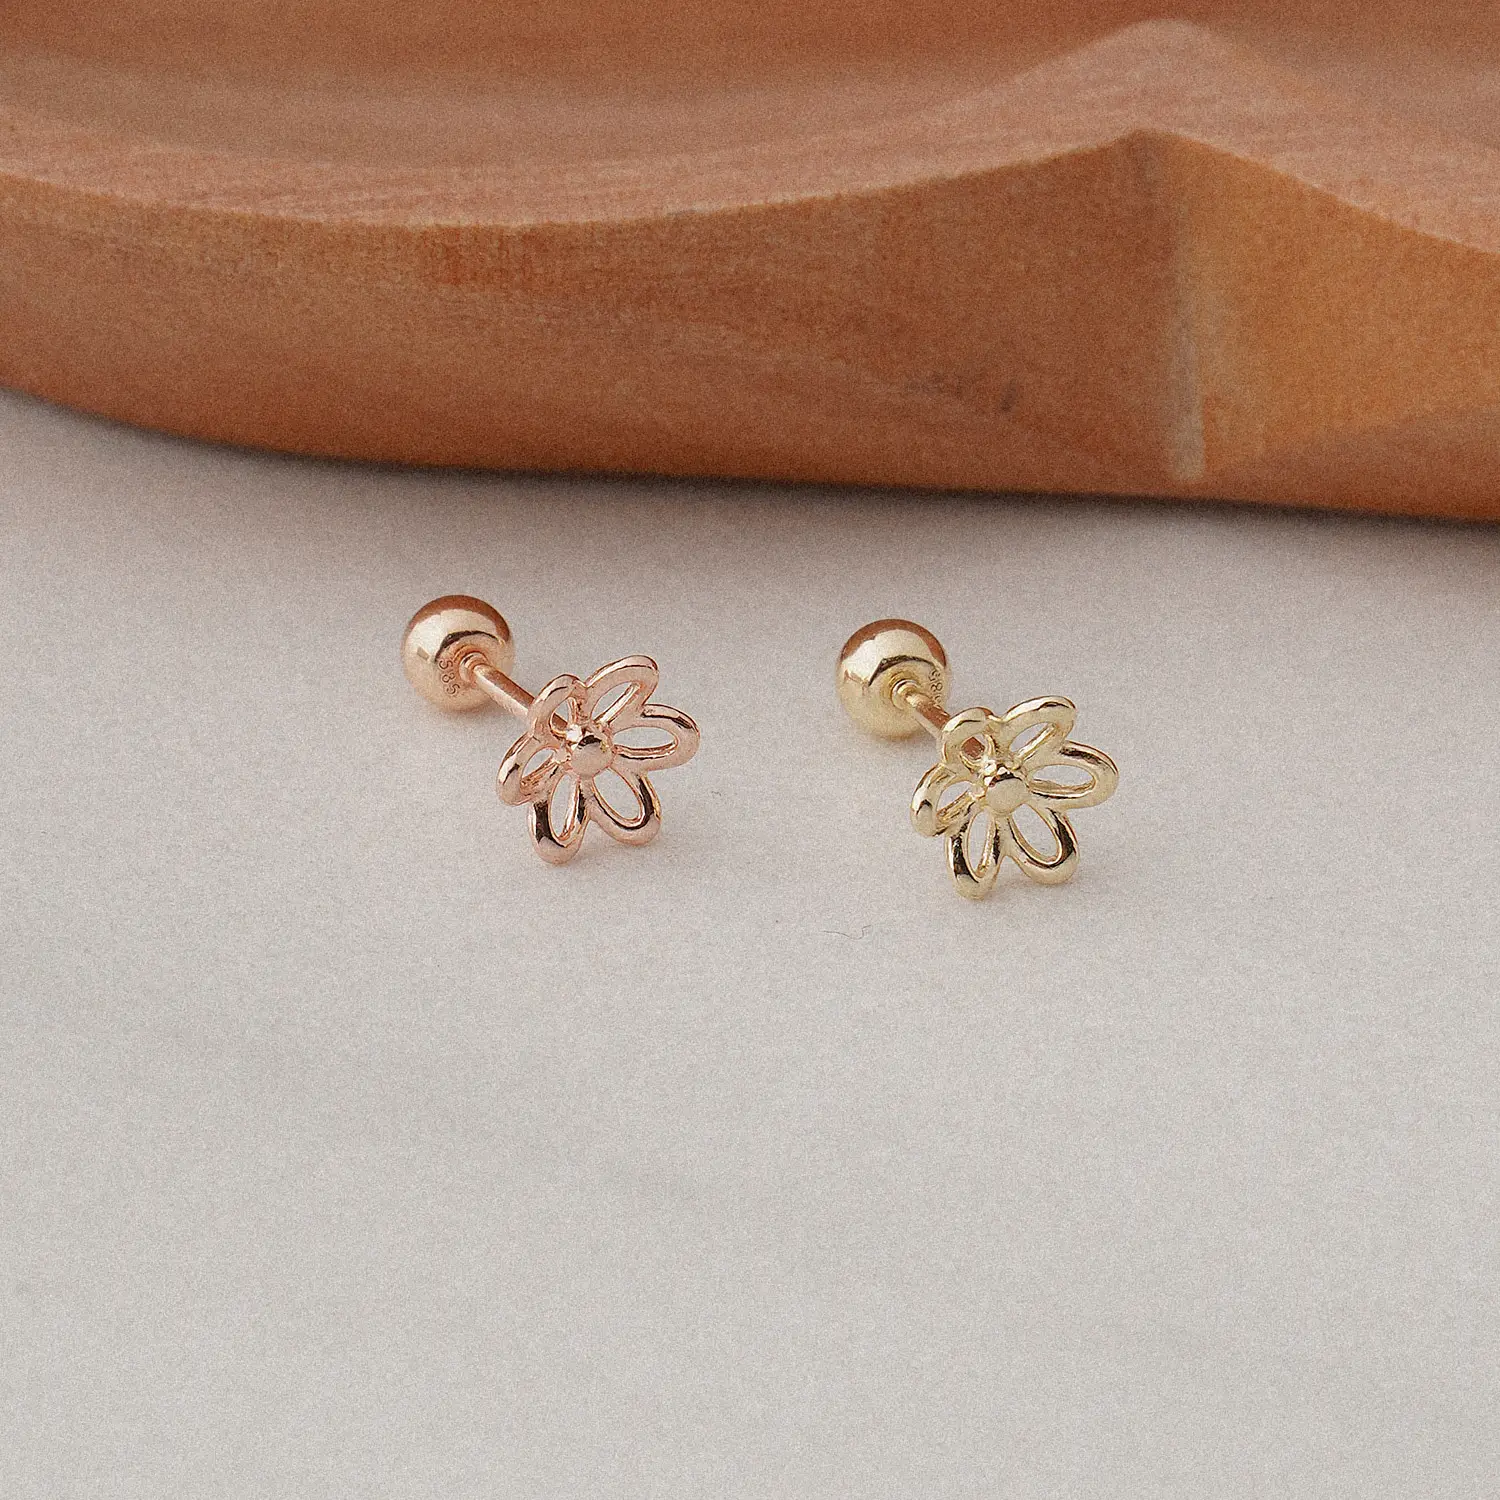 [Artpierce] 14k altın çizgi çiçek temel piercing kore'de yapılan mücevher endüstrisinde üst marka olarak kendini kuruyor